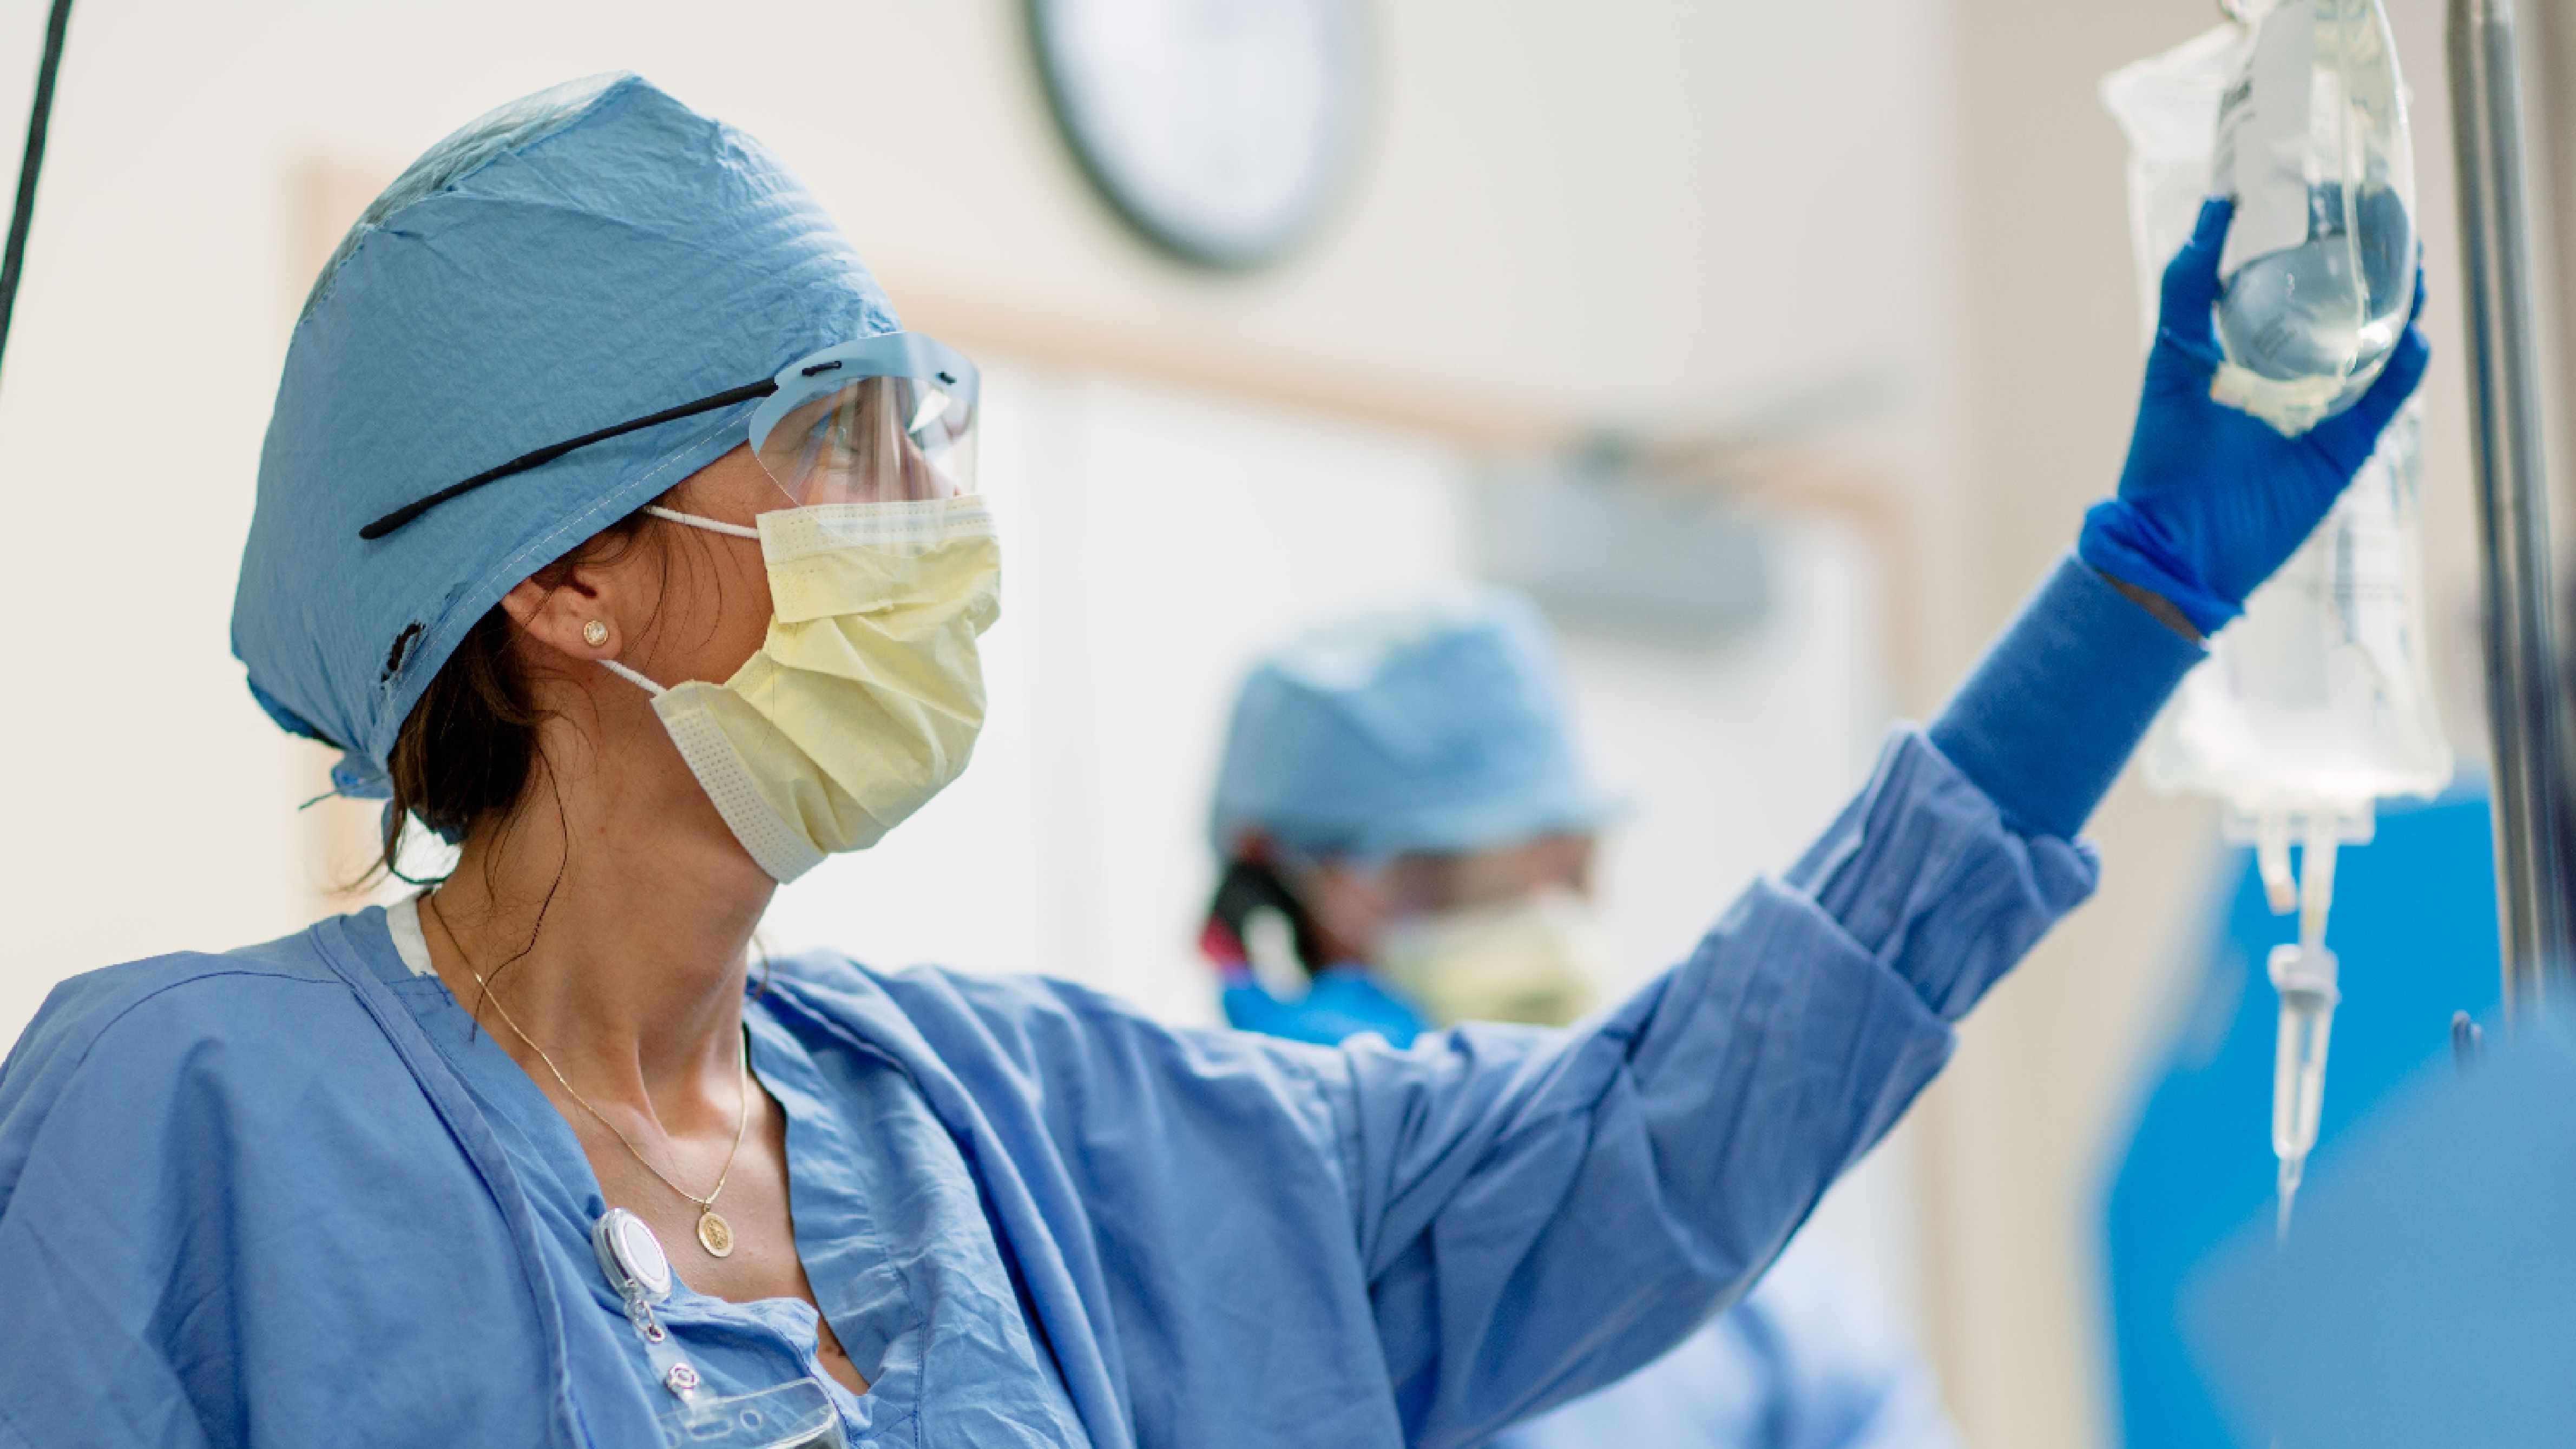 Una enfermera vestida con ropa estéril azul levanta el brazo para alcanzar el suero